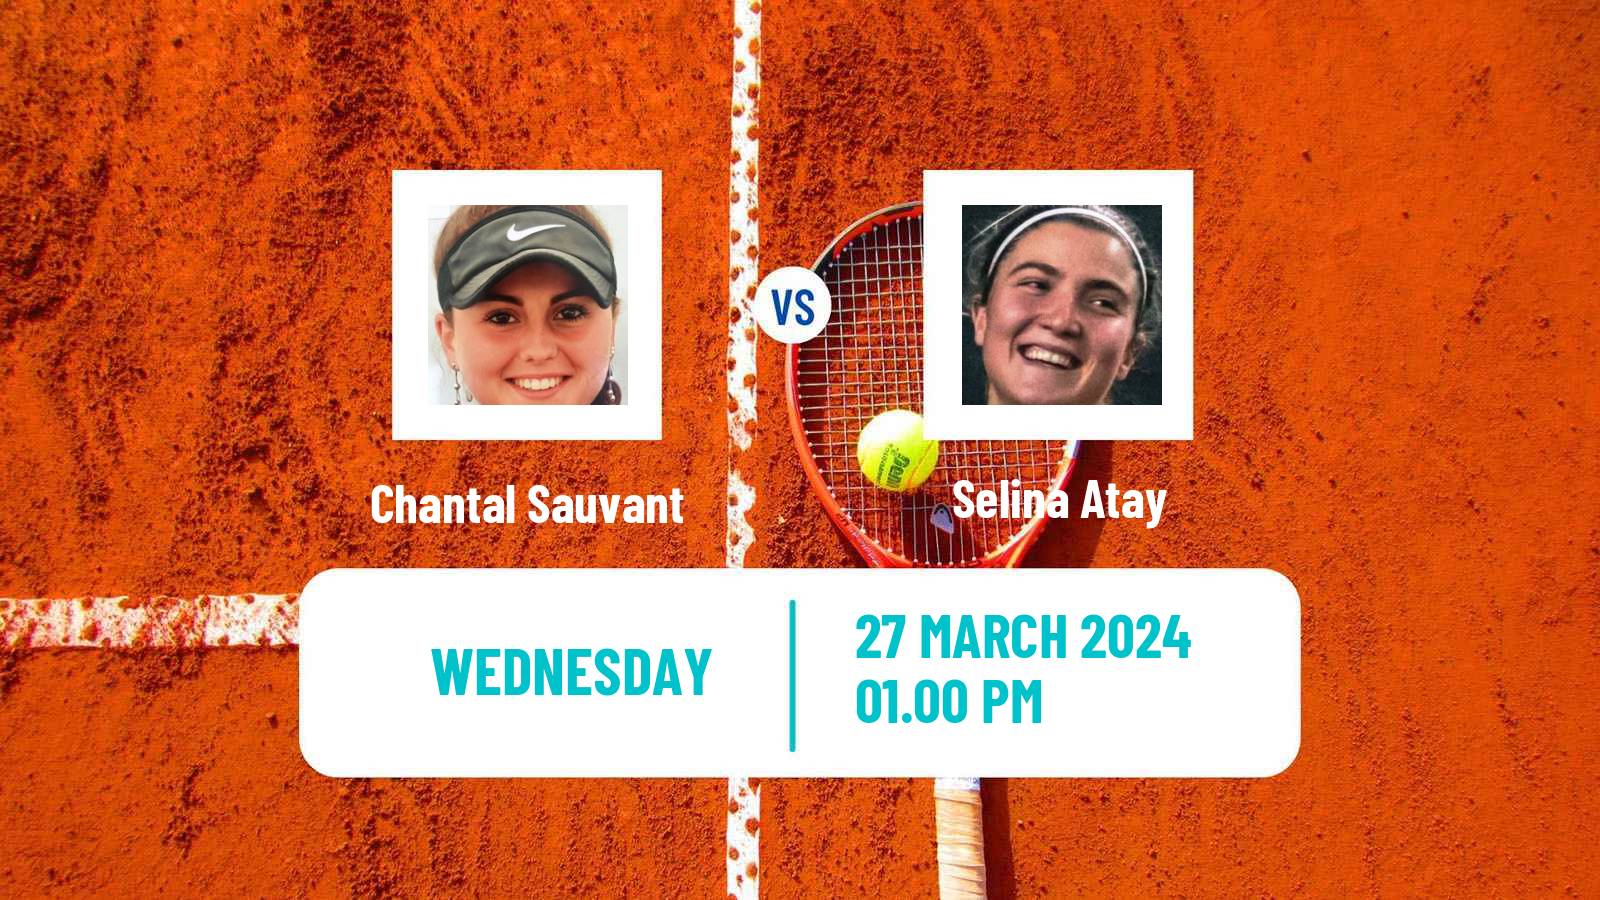 Tennis ITF W15 Antalya 7 Women Chantal Sauvant - Selina Atay